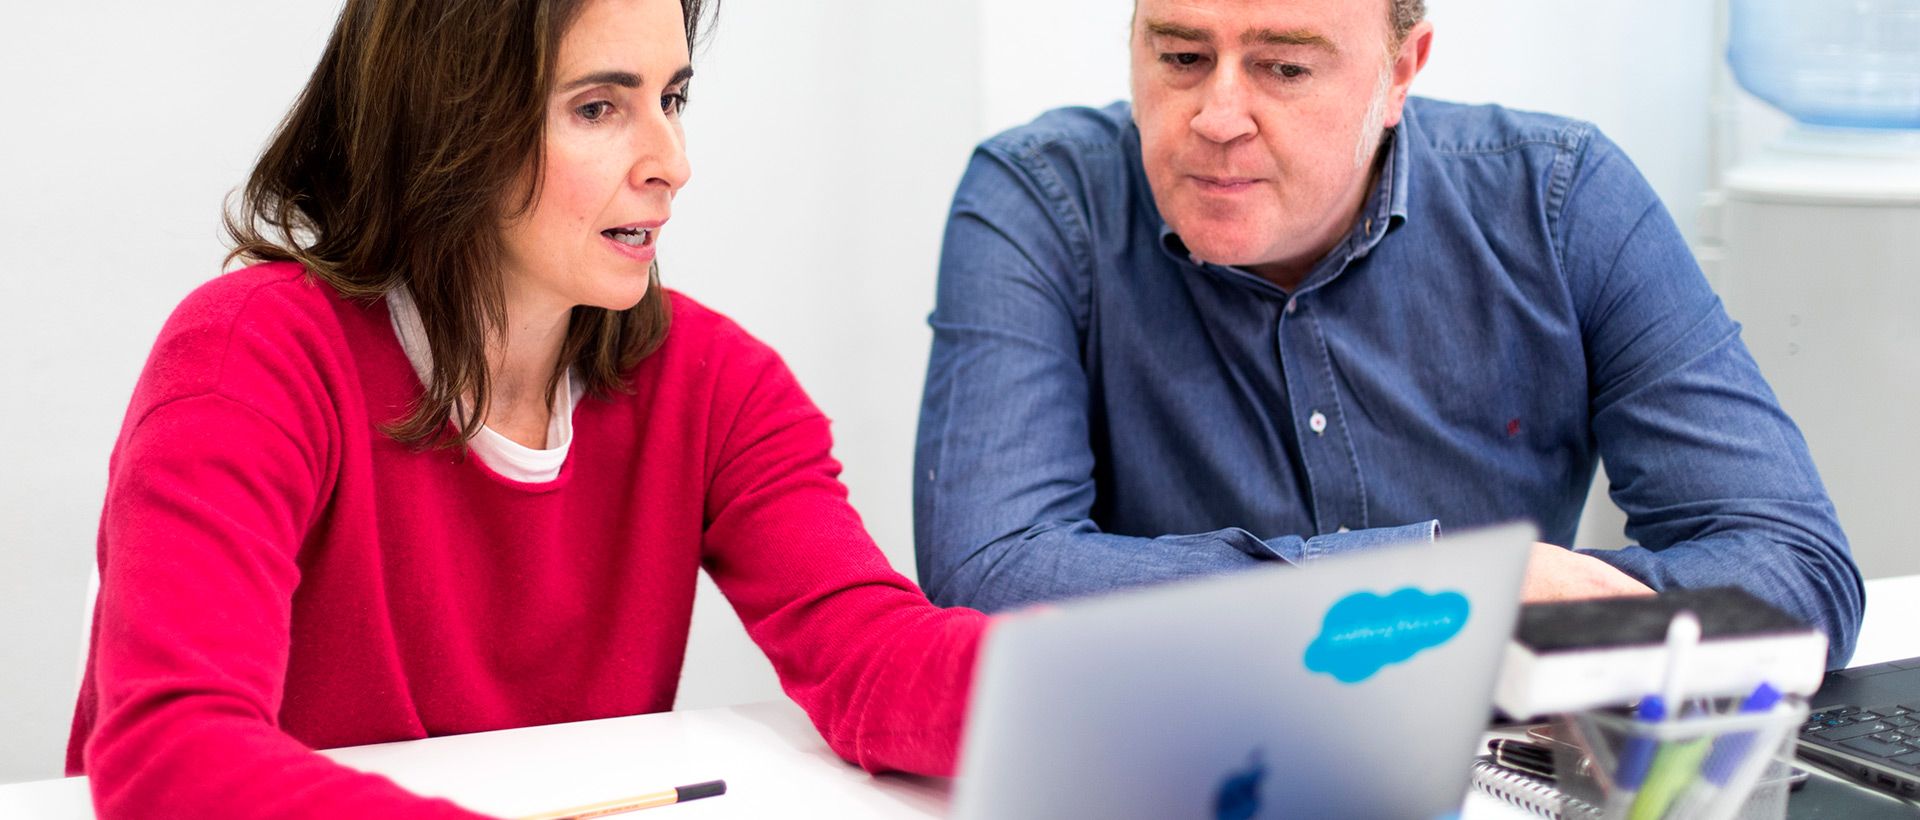 Comment Salesforce peut vous aider à booster votre carrière?